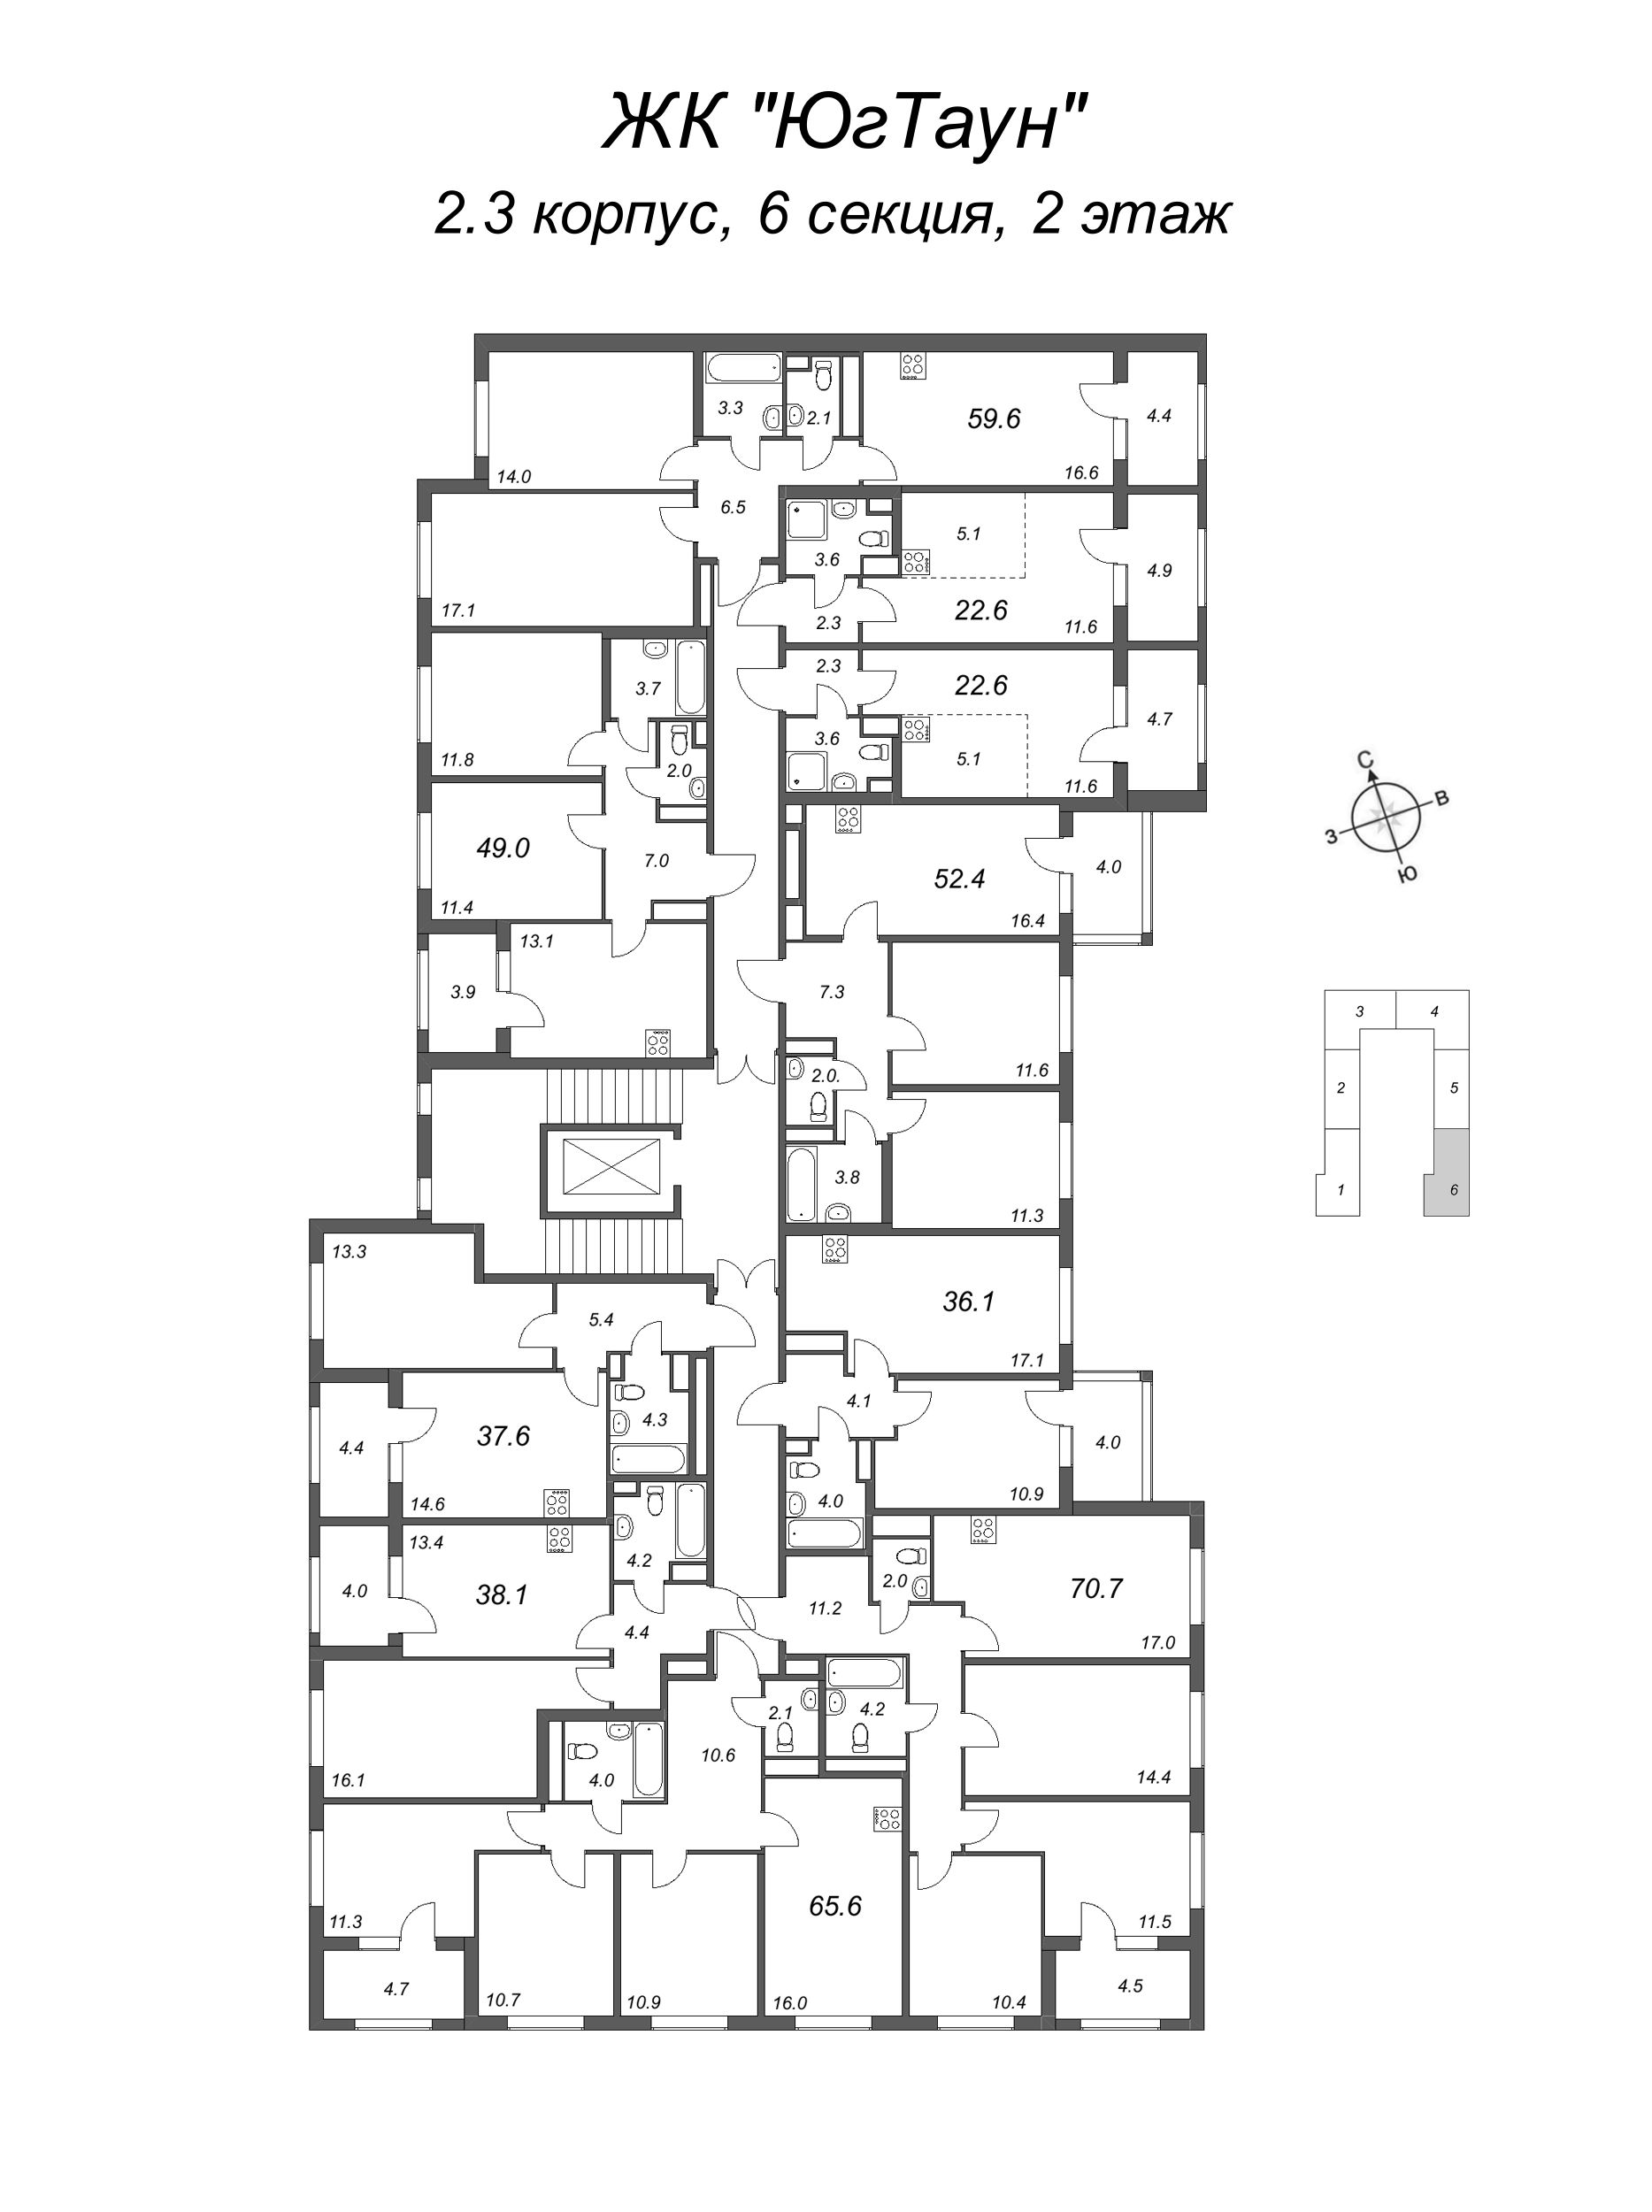 2-комнатная (Евро) квартира, 36.1 м² в ЖК "ЮгТаун" - планировка этажа